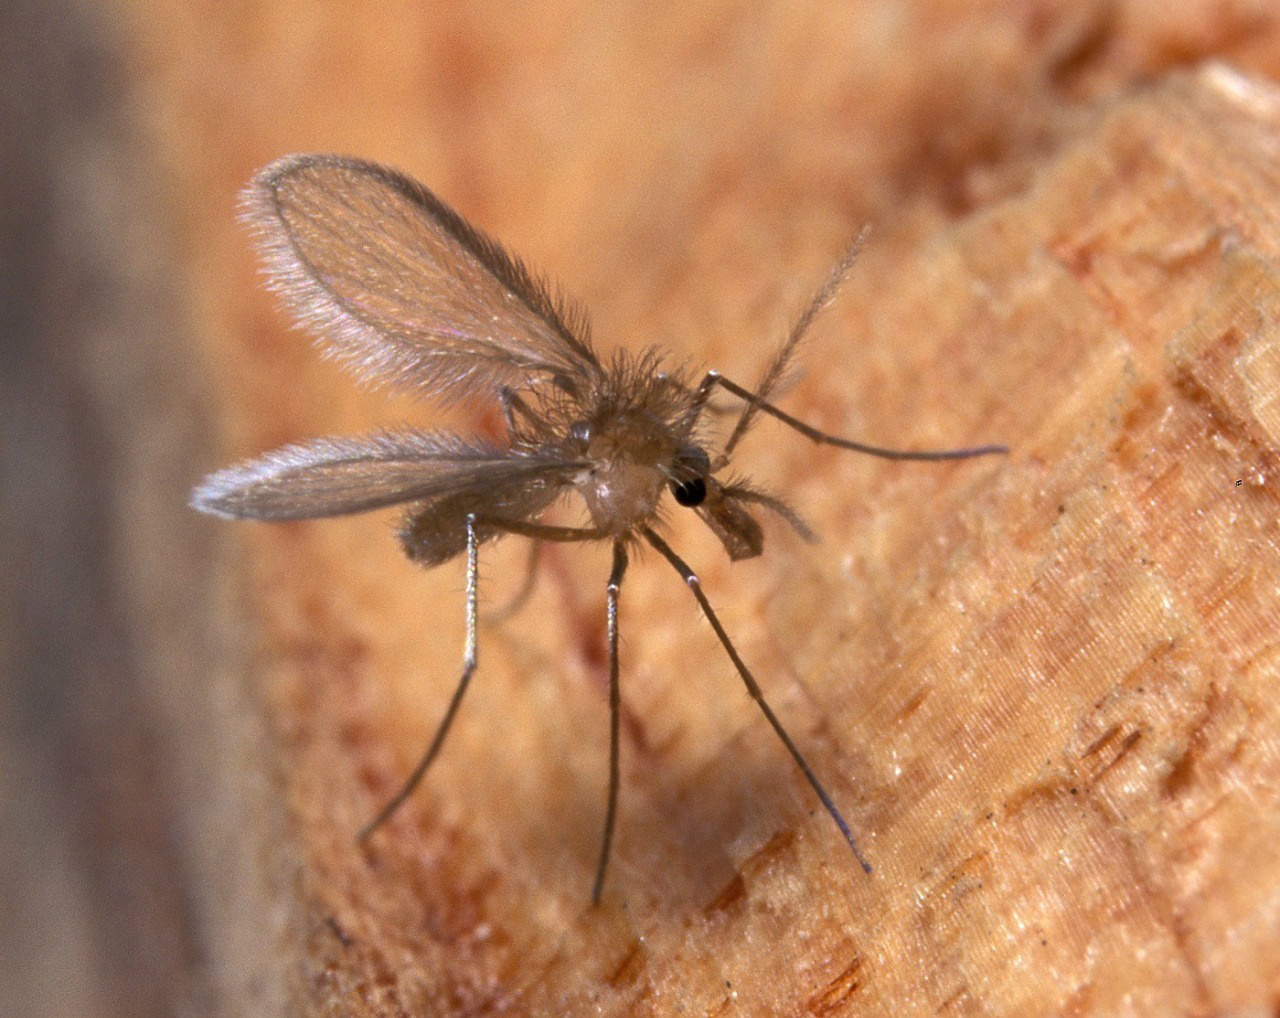 Mosquito fêmea do flebótomo, transmissor da Leishmaniose. (Foto: Assessoria)